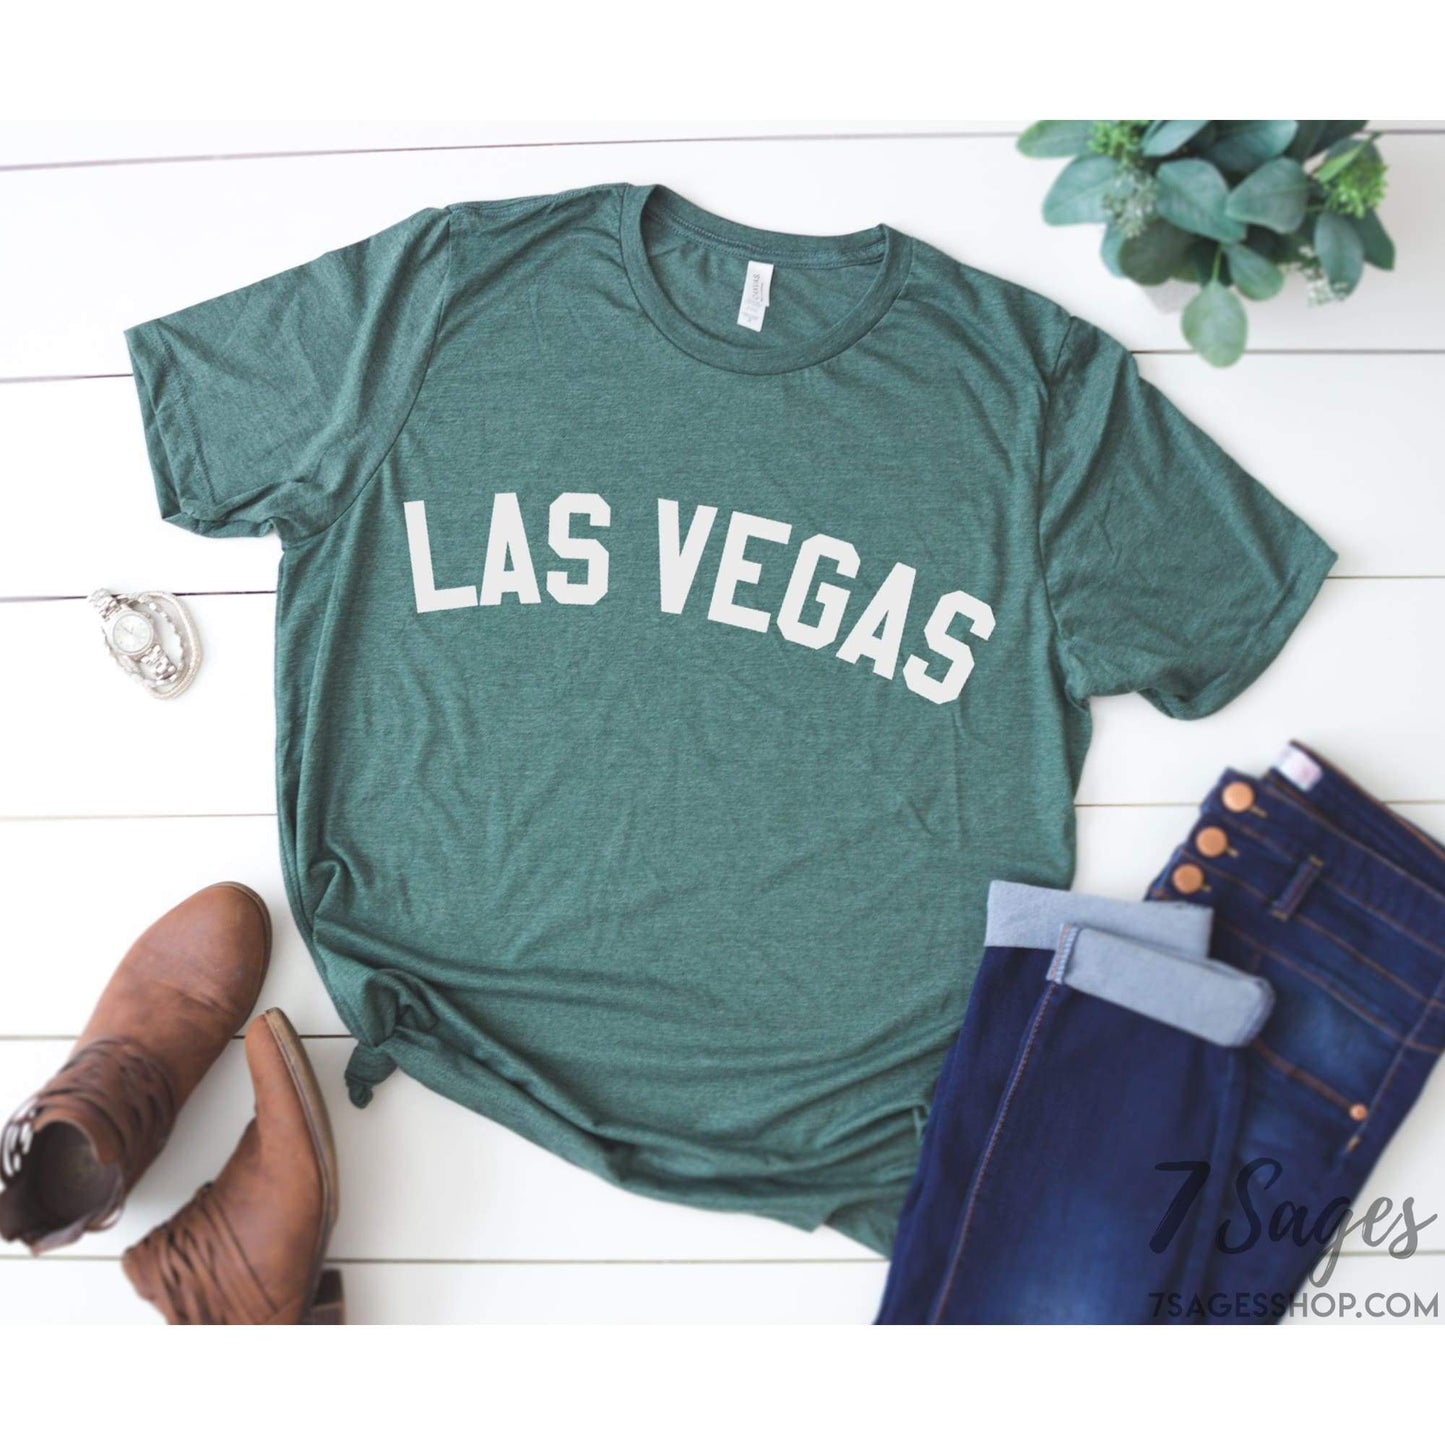 Las Vegas Shirt - Las Vegas T-Shirt - Las Vegas Trip Shirt - Las Vegas Gift - Vegas Shirt - Unisex Soft Shirt